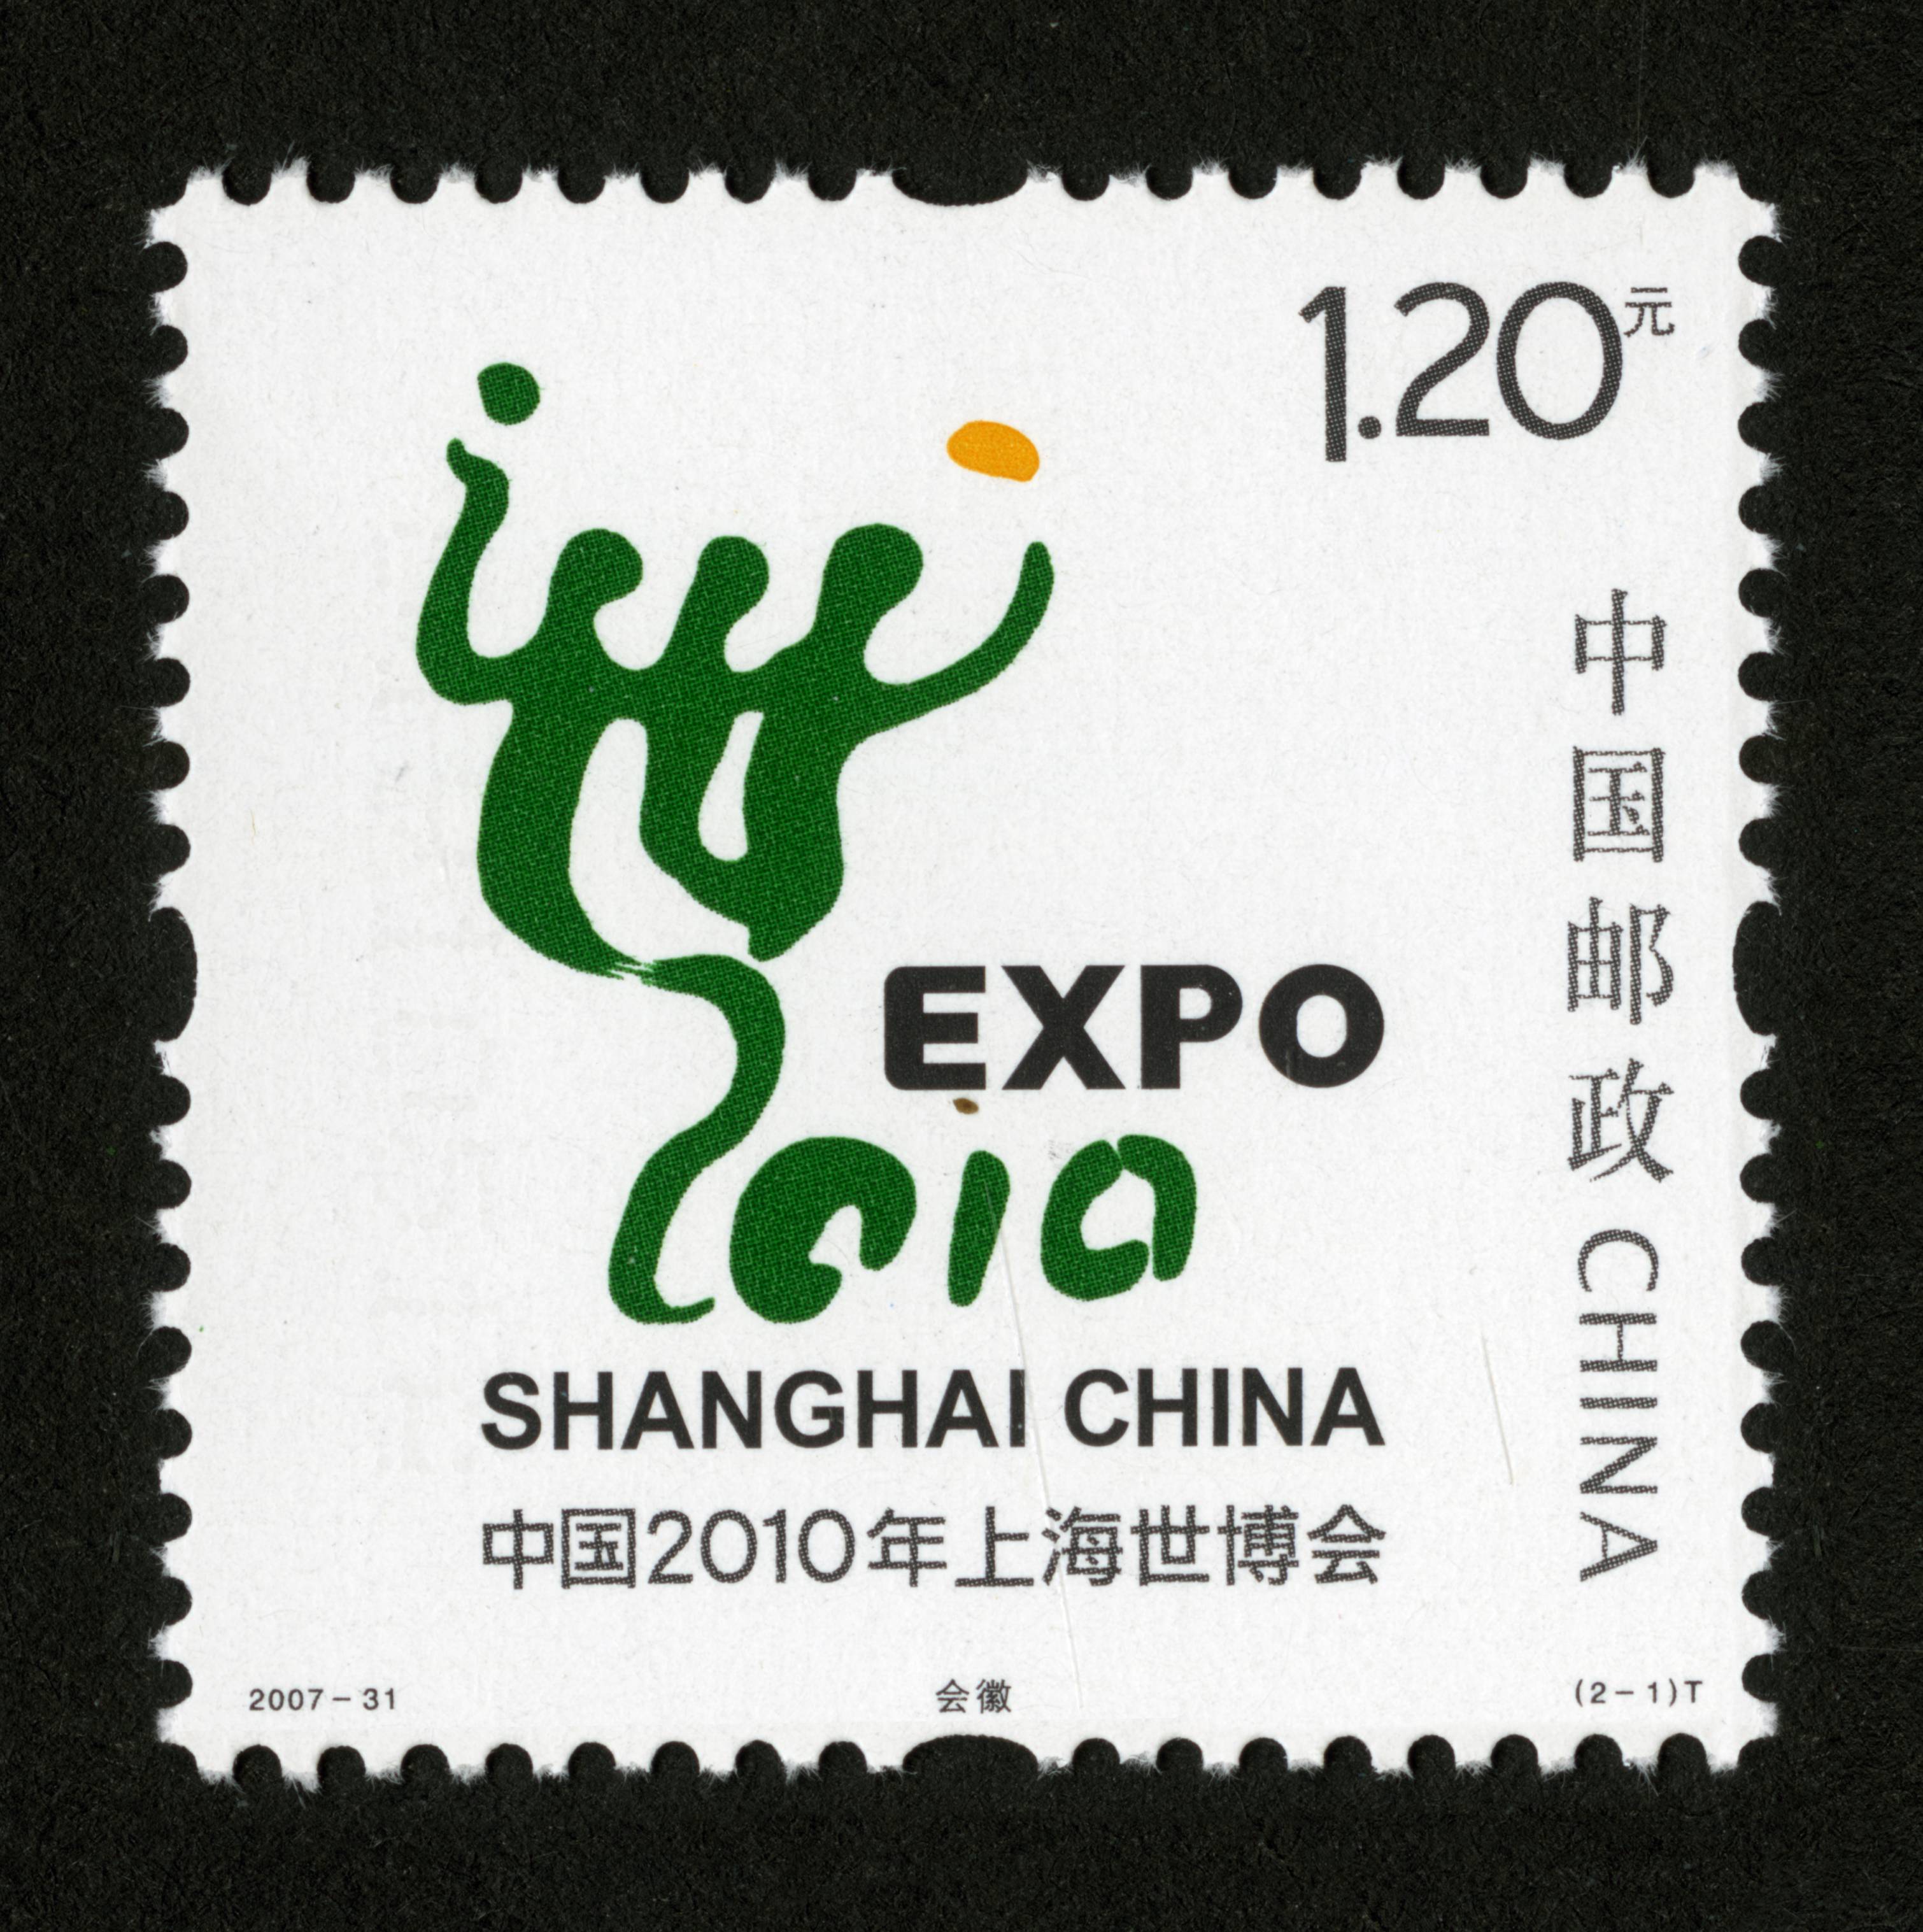 中国2010年上海世博会会徽和吉祥物(t)